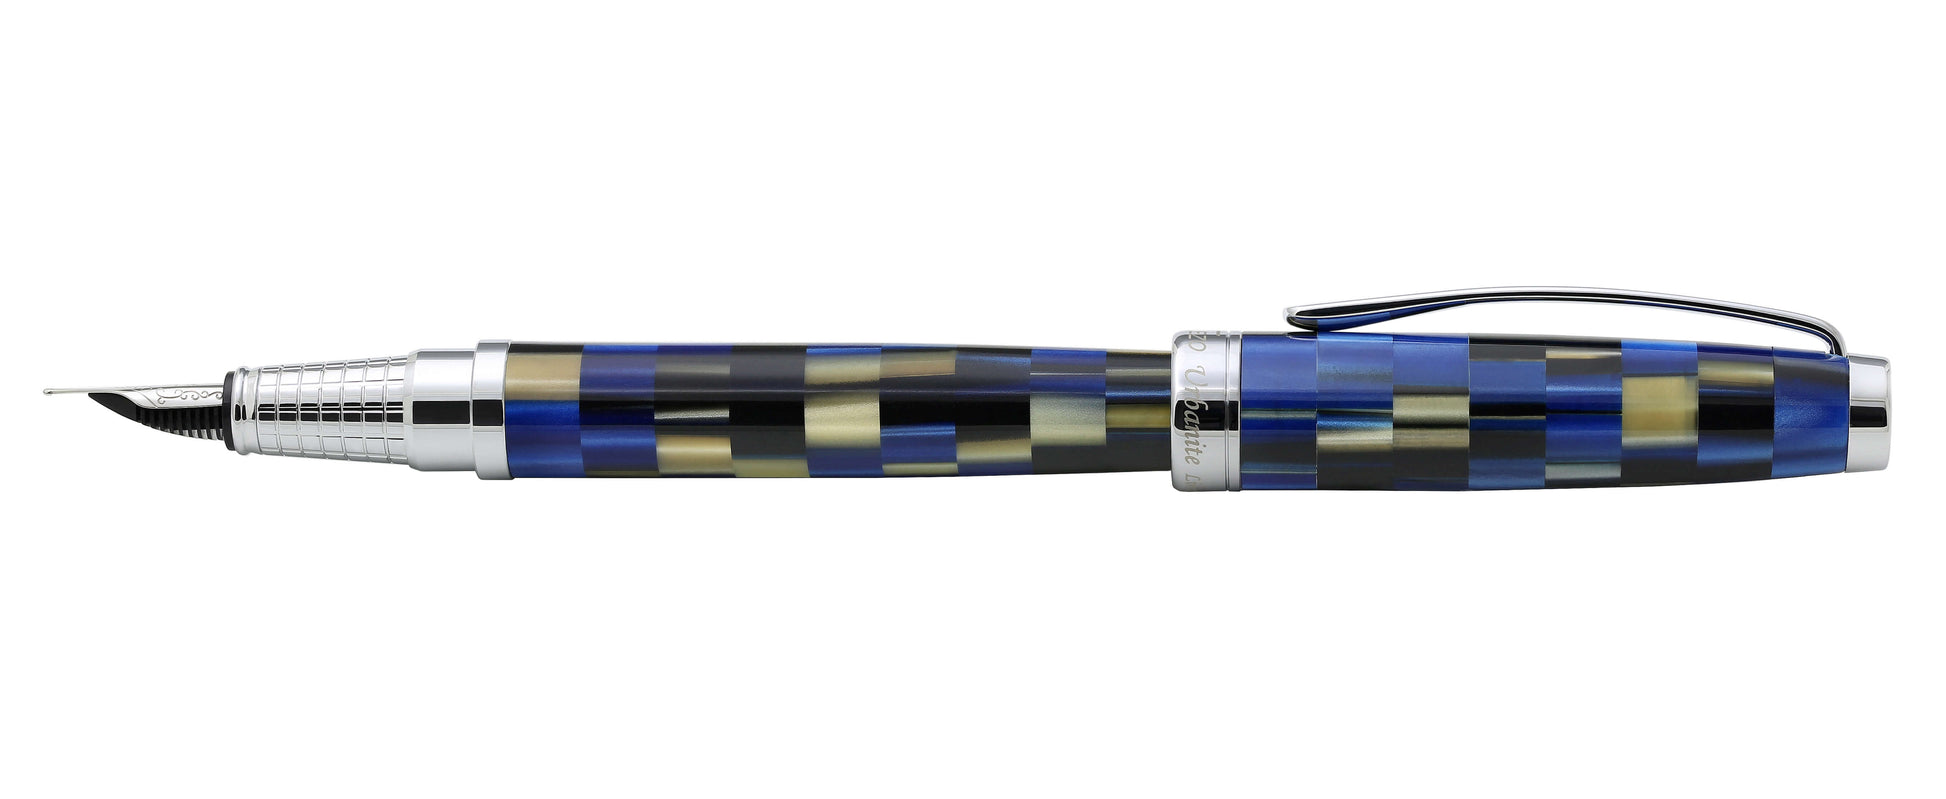 Xezo - Side view of the Urbanite Blue FM fountain pen